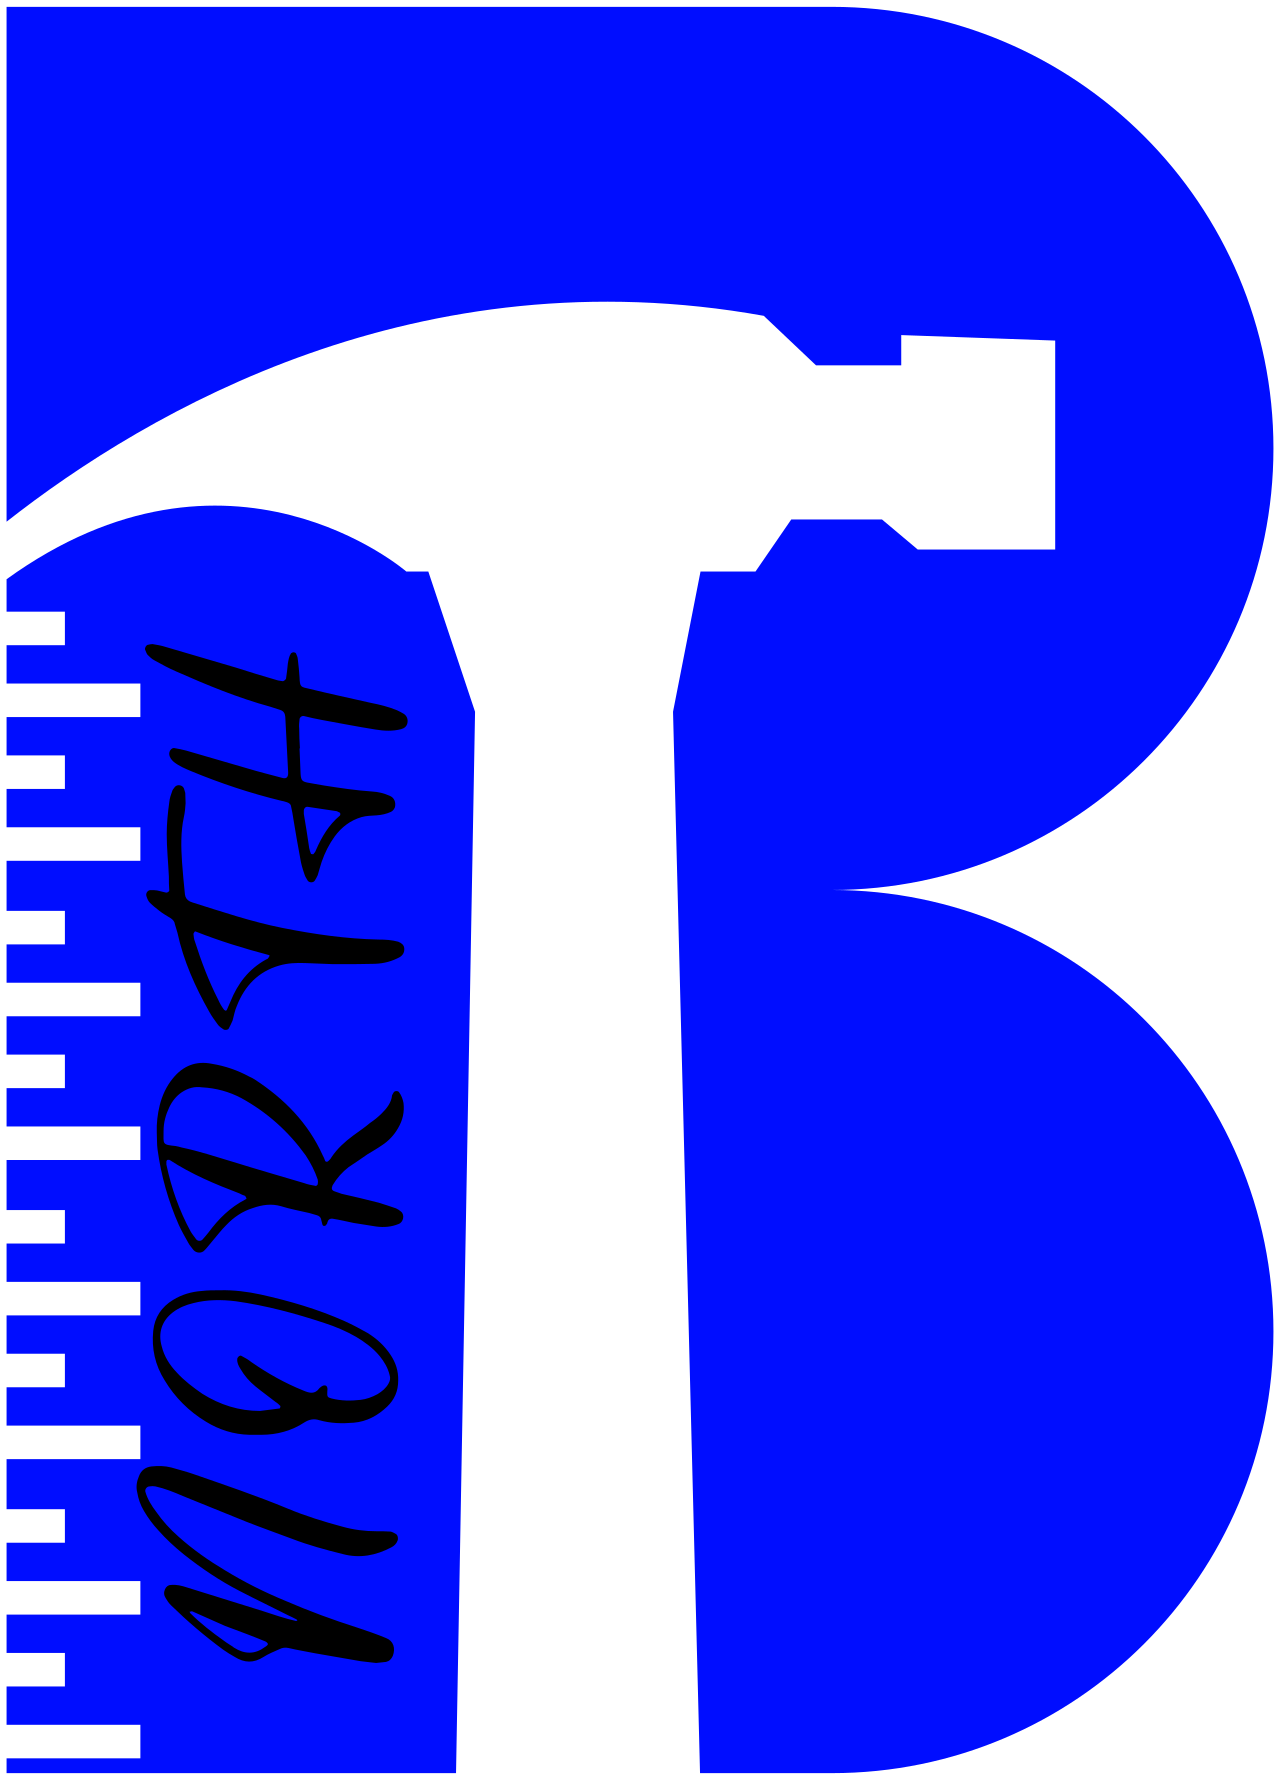 North's logo